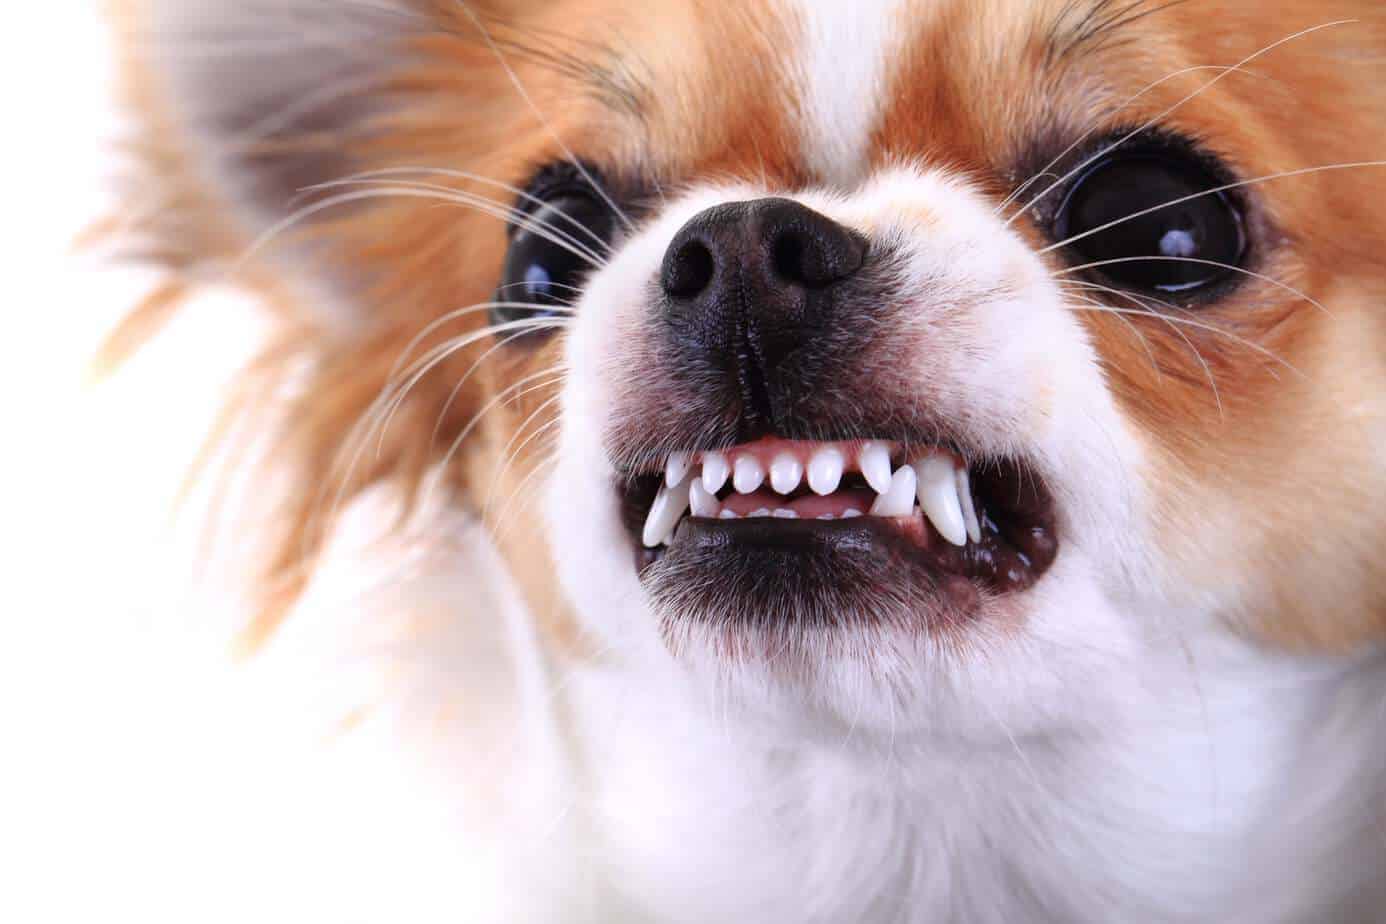 El chihuahua agresivo muestra los dientes. Trabaja para reducir la agresividad del perro con el entrenamiento.